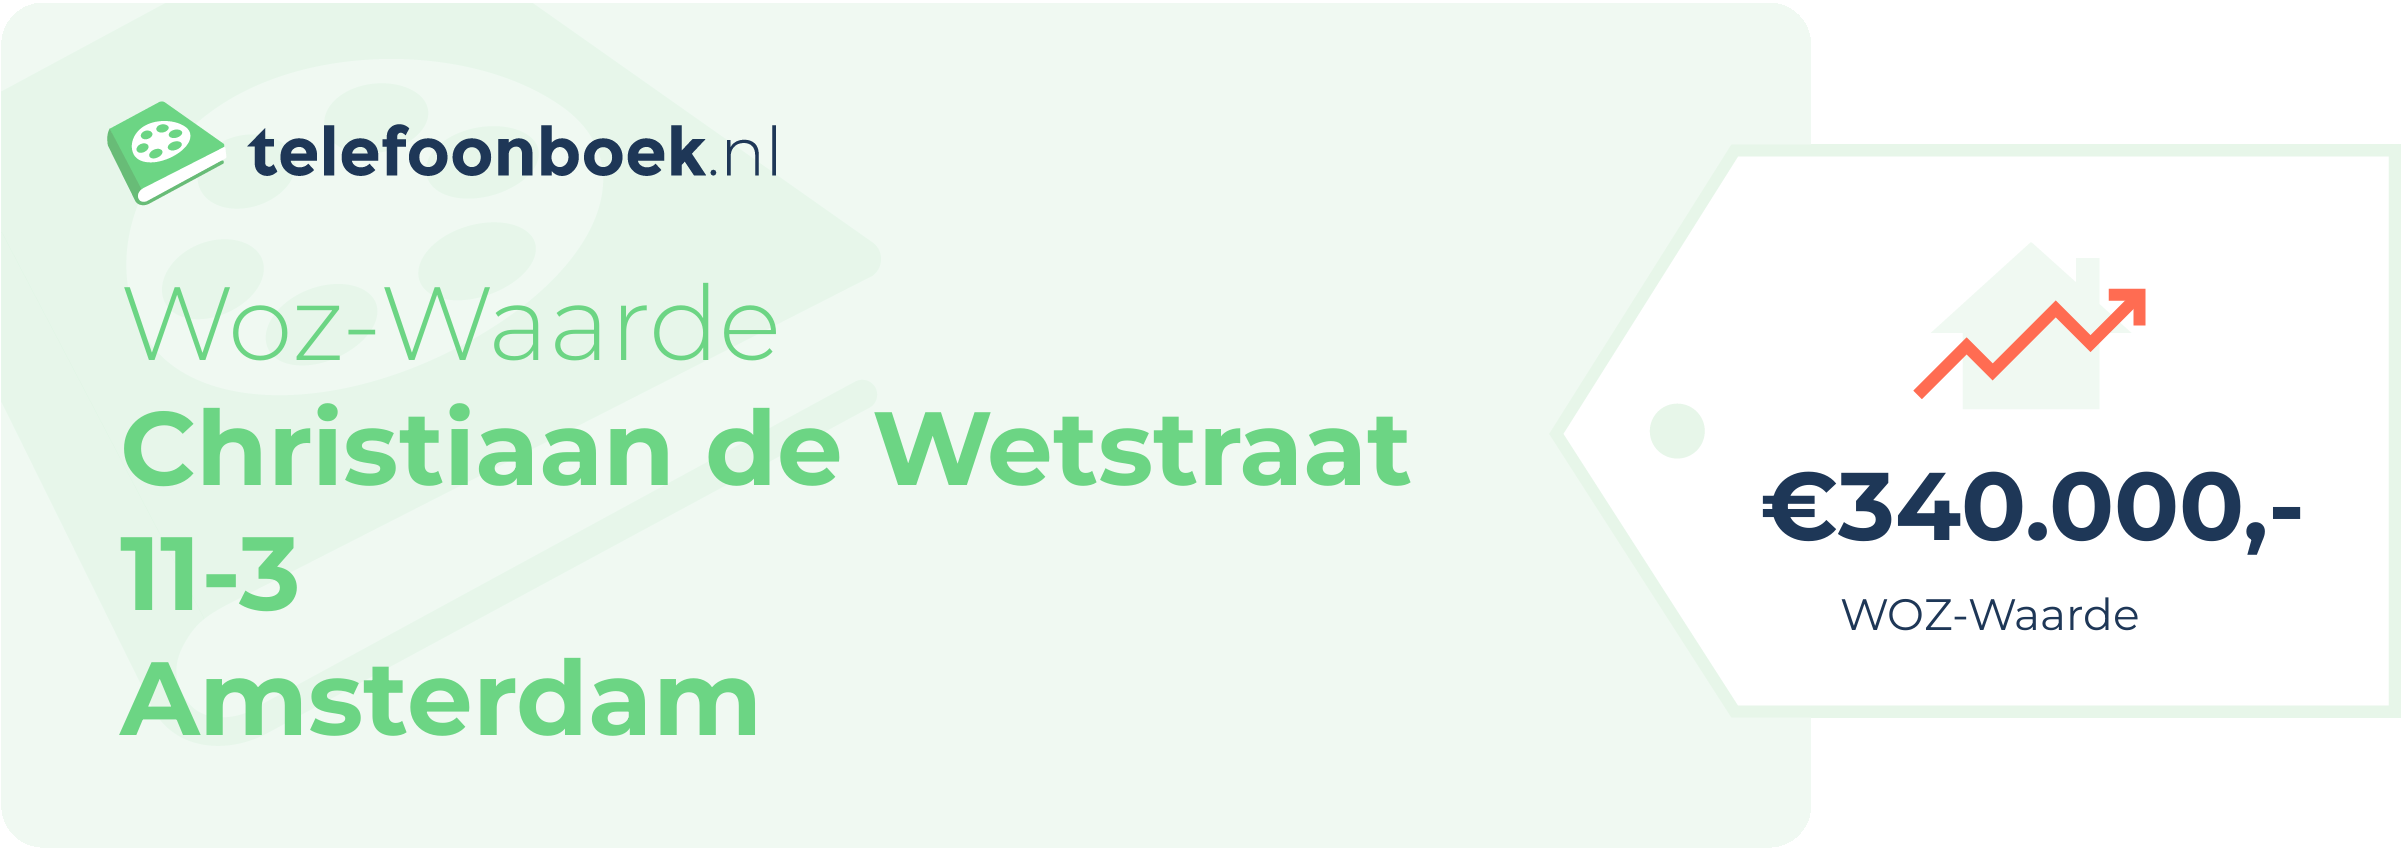 WOZ-waarde Christiaan De Wetstraat 11-3 Amsterdam